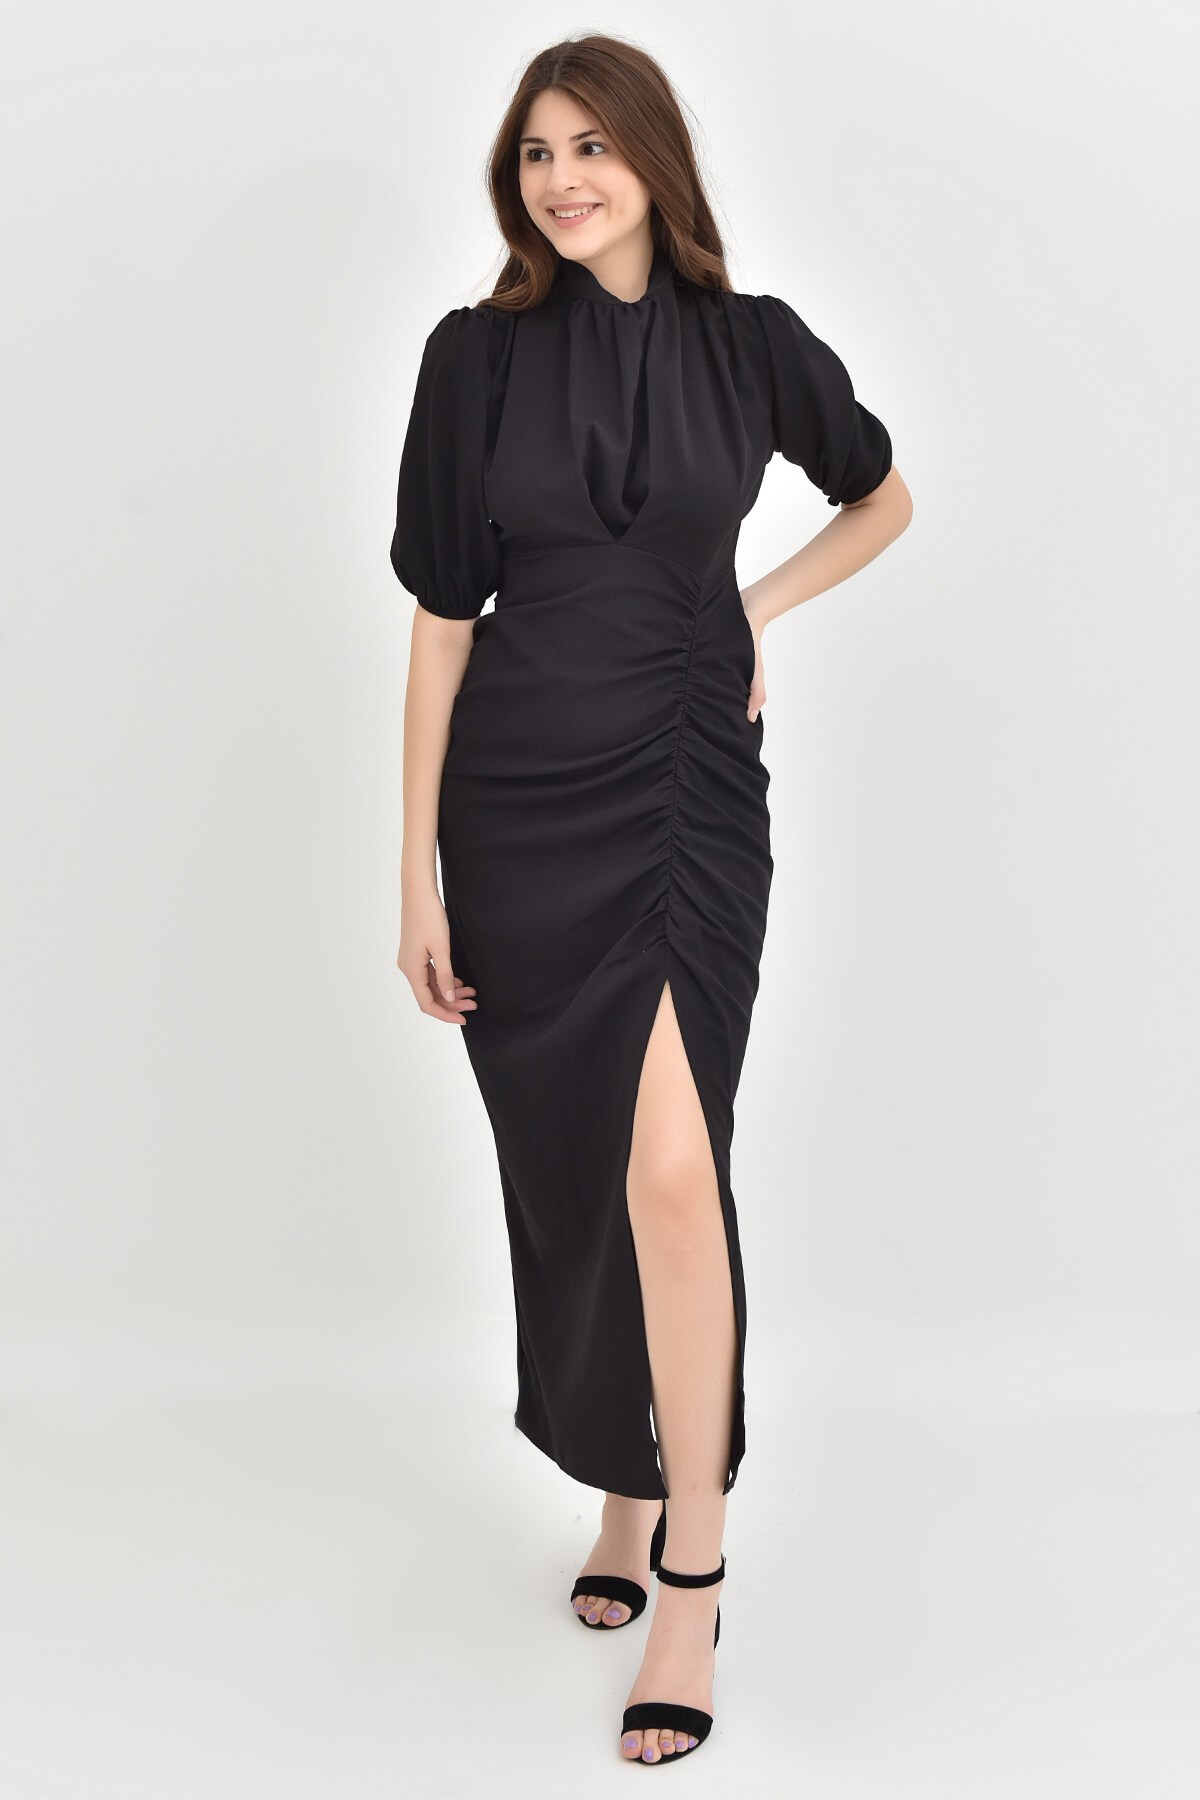 Siyah Balon Kol Yırtmaçlı Elbise - Moda Kapımda İle Kapınızda!